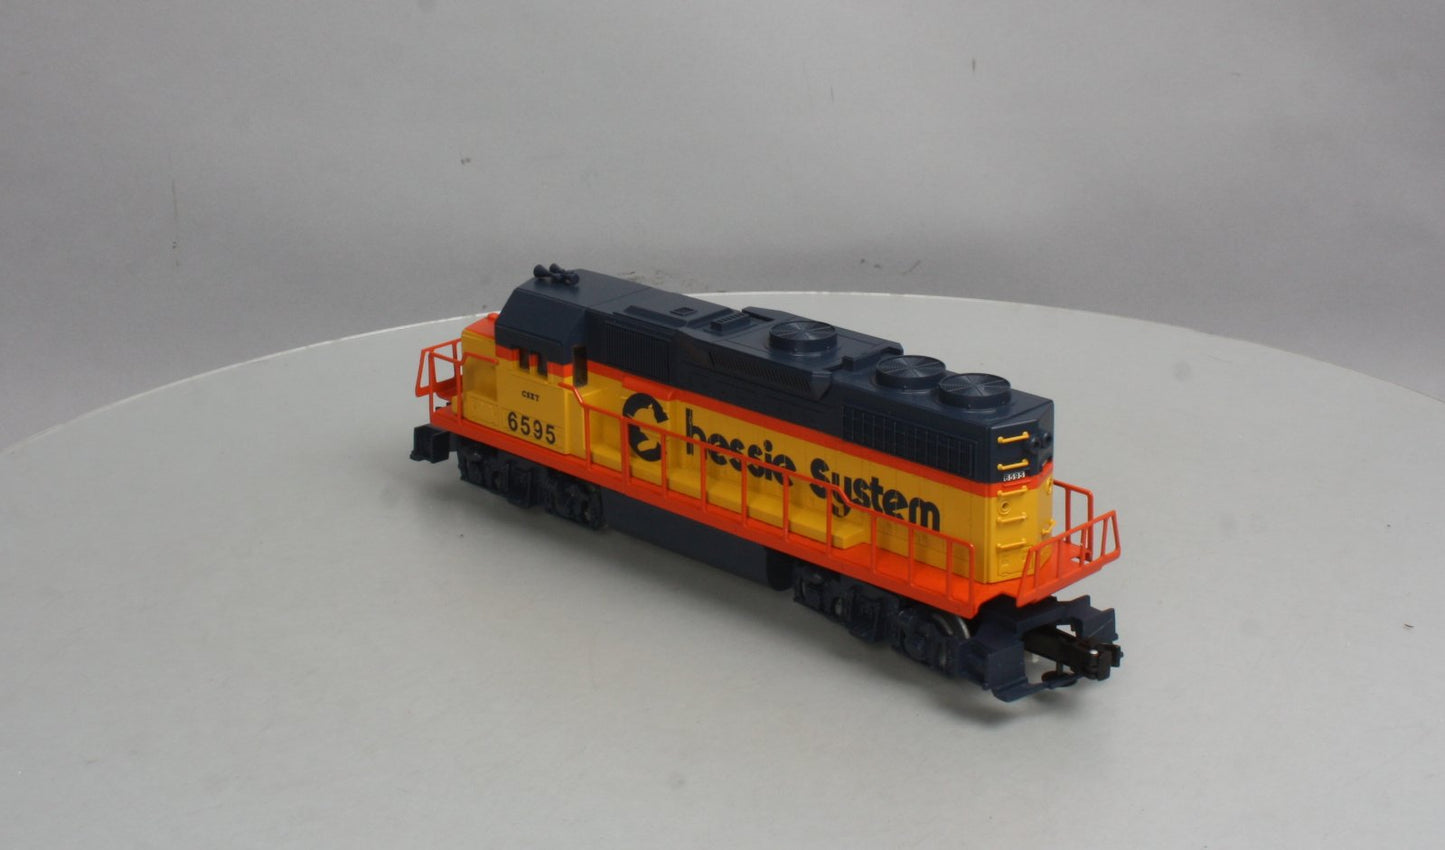 Lionel 6-30131 Chessie System Merger Special GP38 Diesel Locomotive #6595